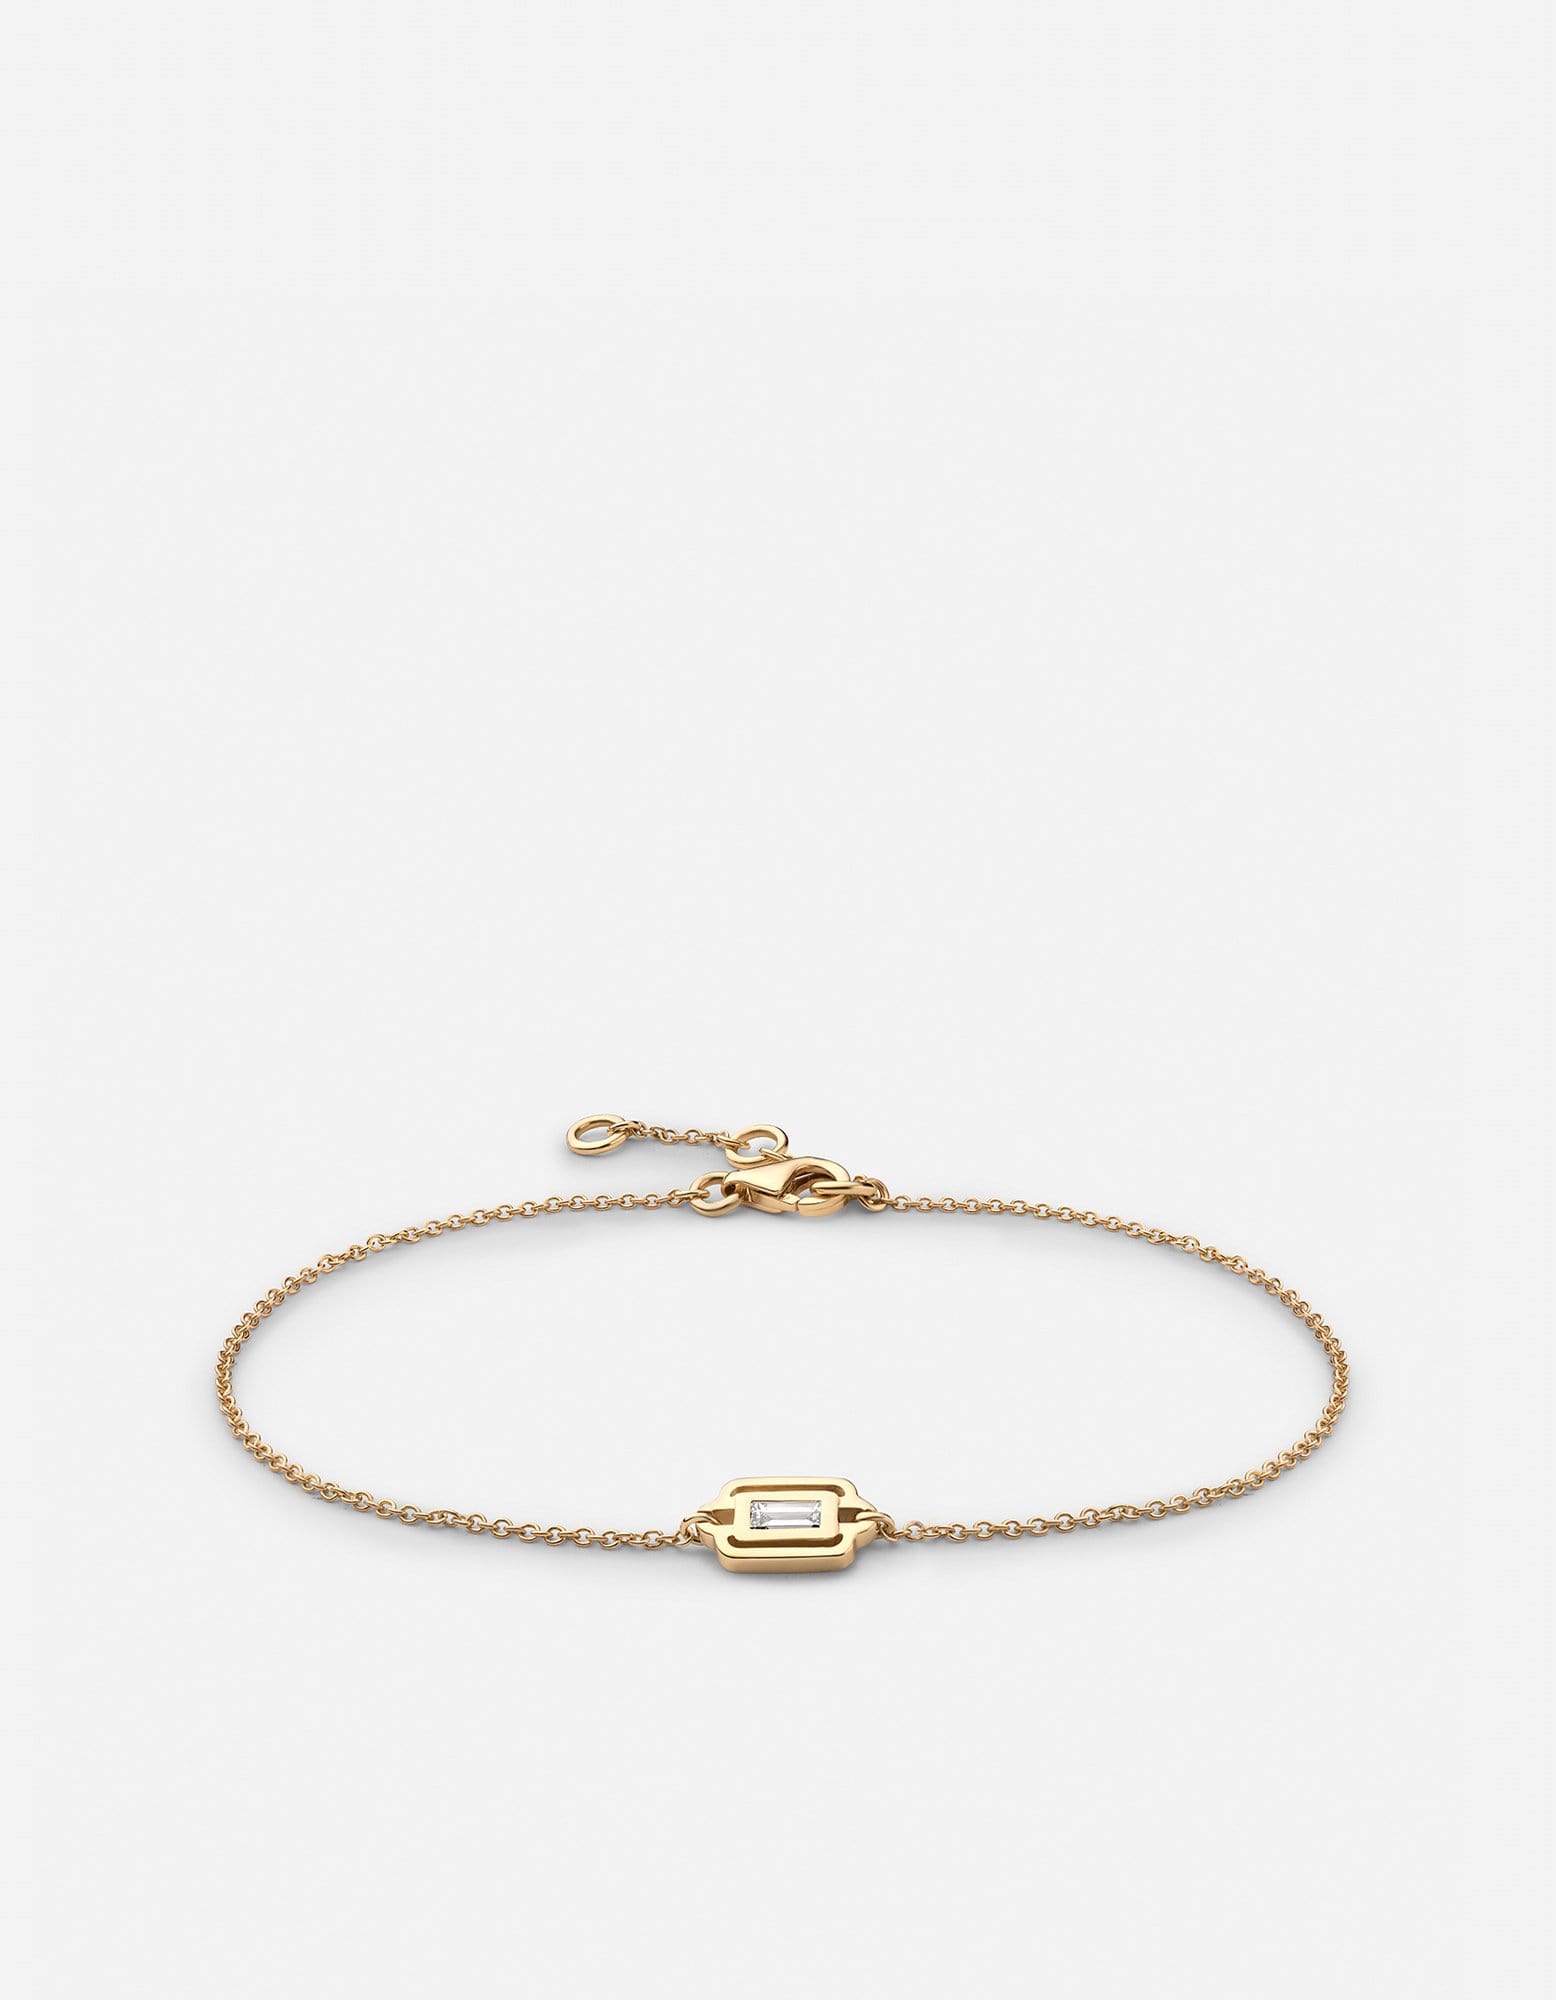 Luna Bracelet w/Baguette Diamond, 14k Yellow Gold | Women's Bracelets ...